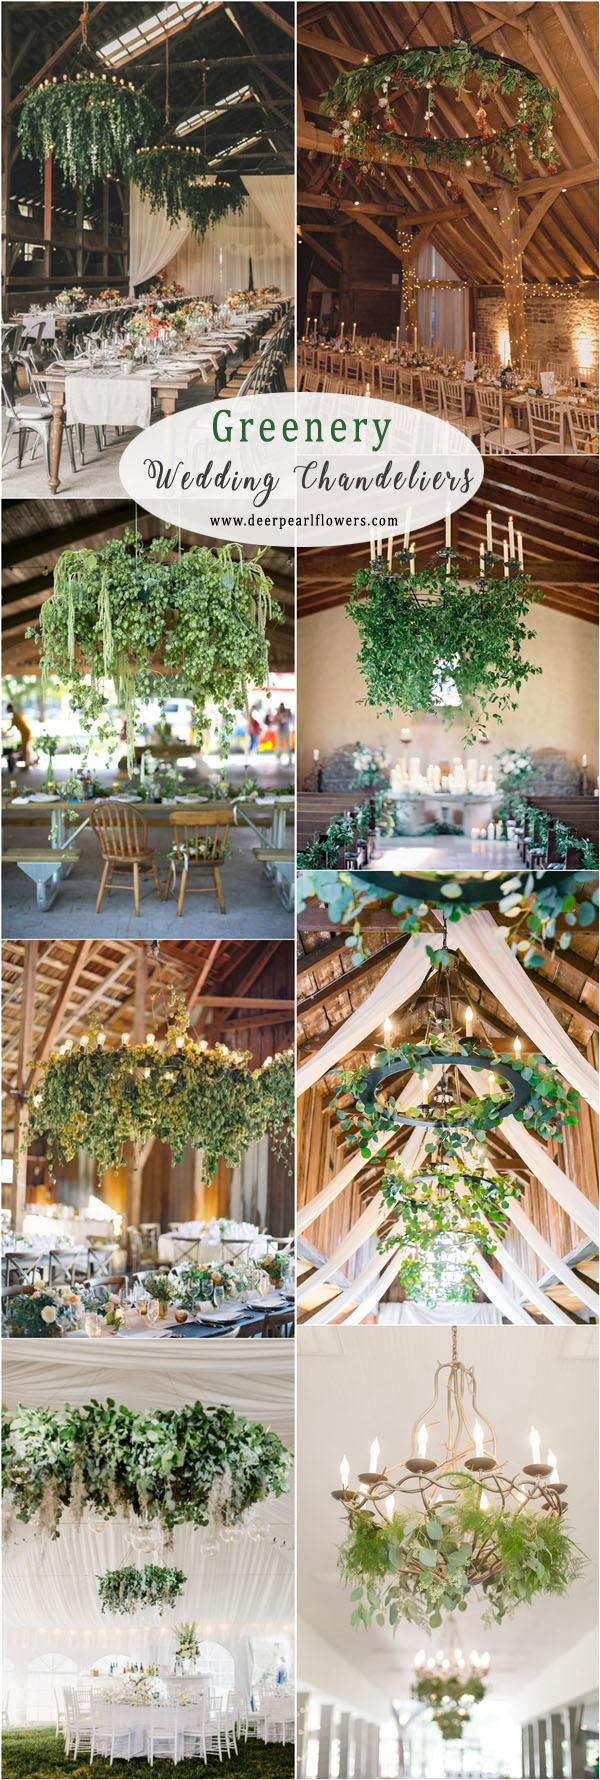 greenery wedding chandelier wedding decor ideas